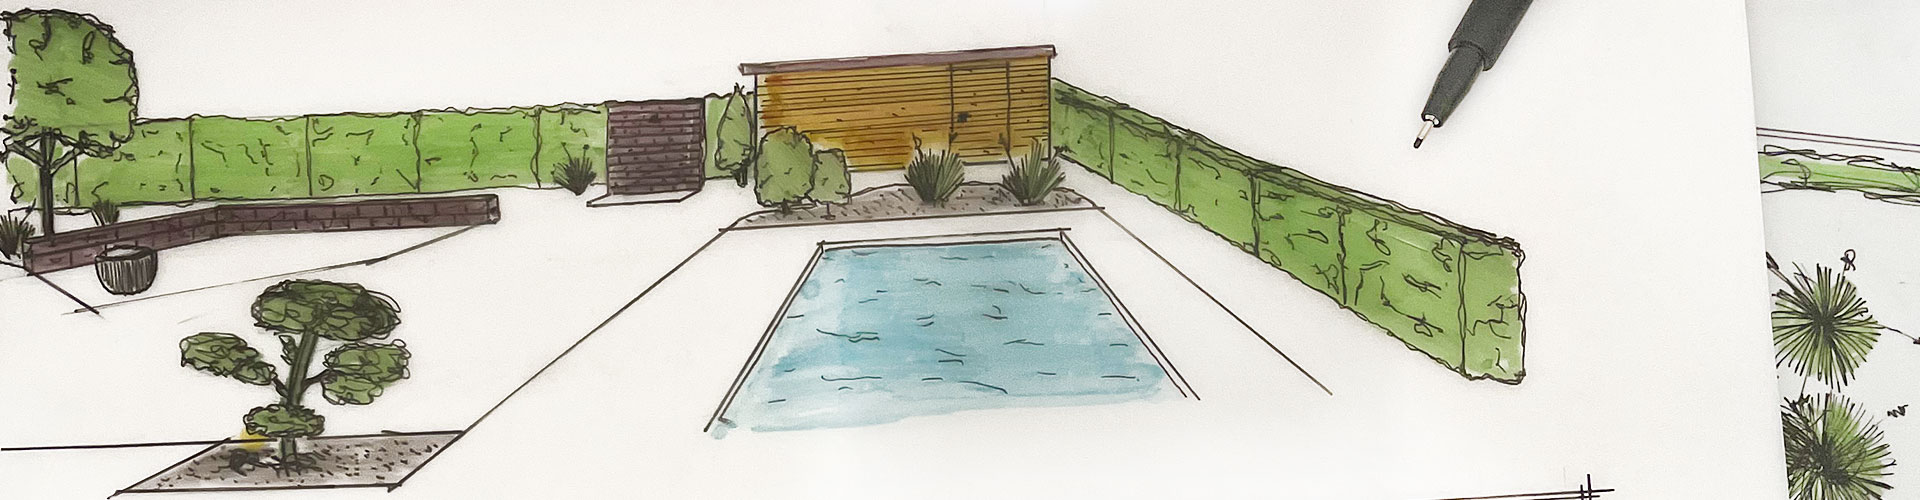 Die Planungsskizze für einen Pool im Garten.